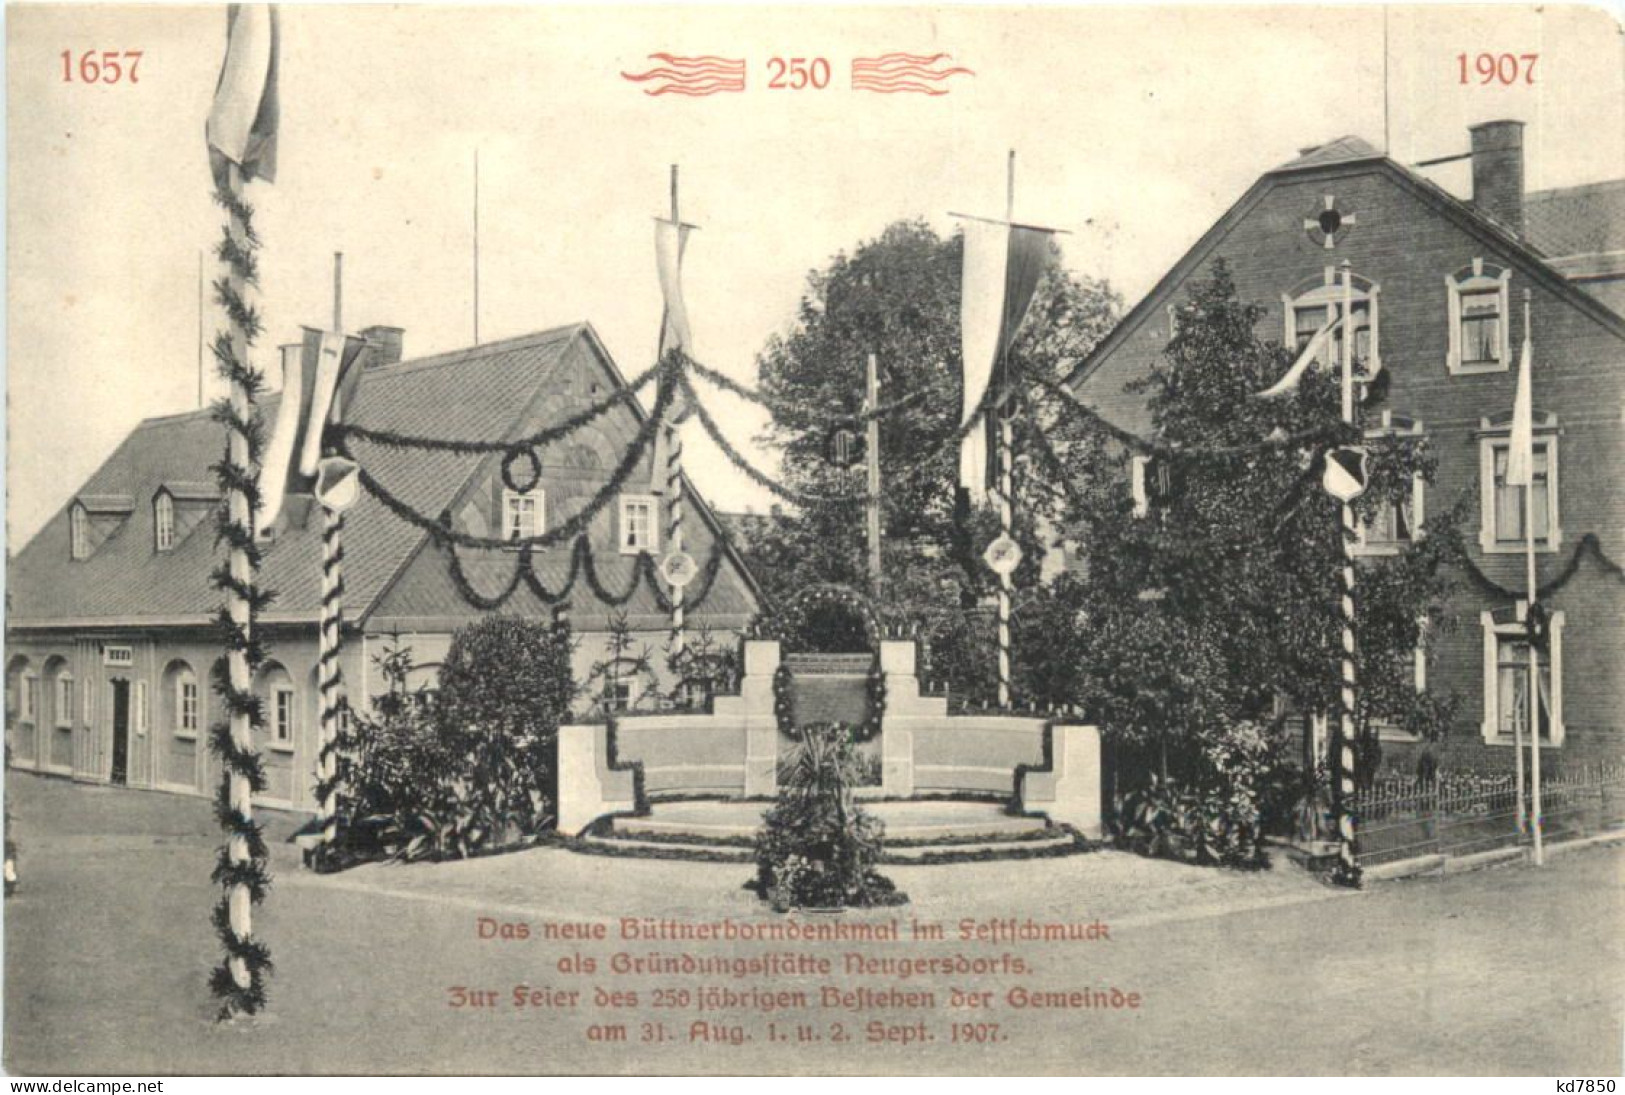 Neugersdorf In Sachsen - Das Neue Büttnerborndenkmal Im Festschmuck 1907 - Ebersbach (Loebau/Zittau)